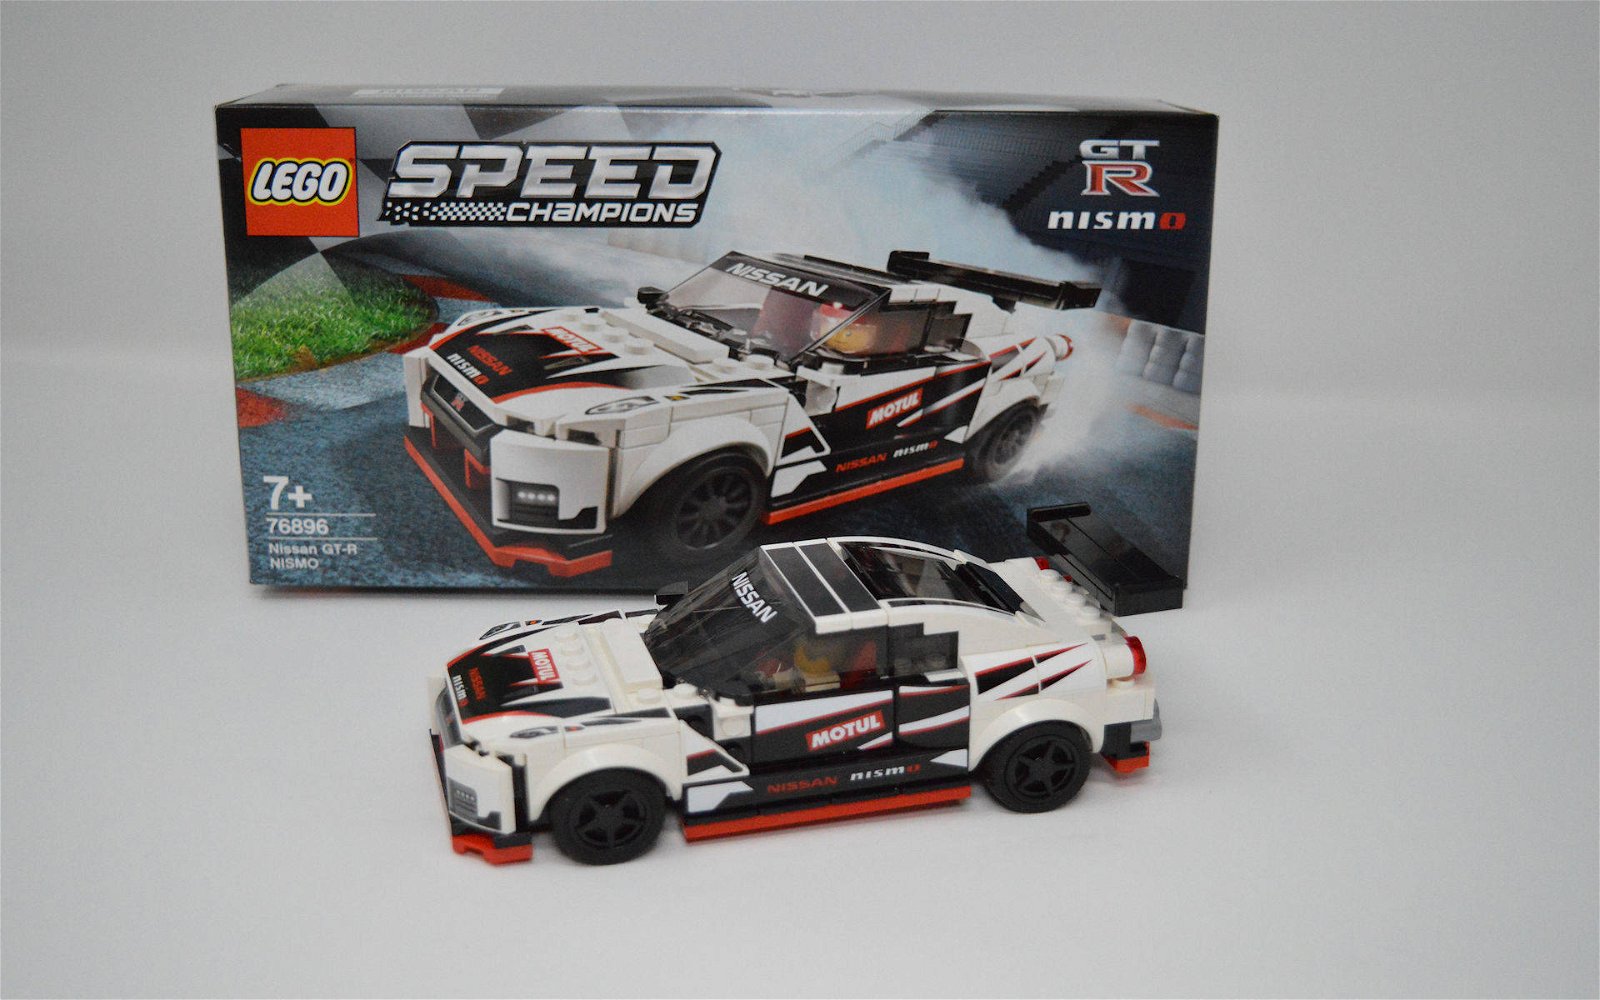 Immagine di LEGO set # 76896 Nissan GT-R NISMO: la recensione